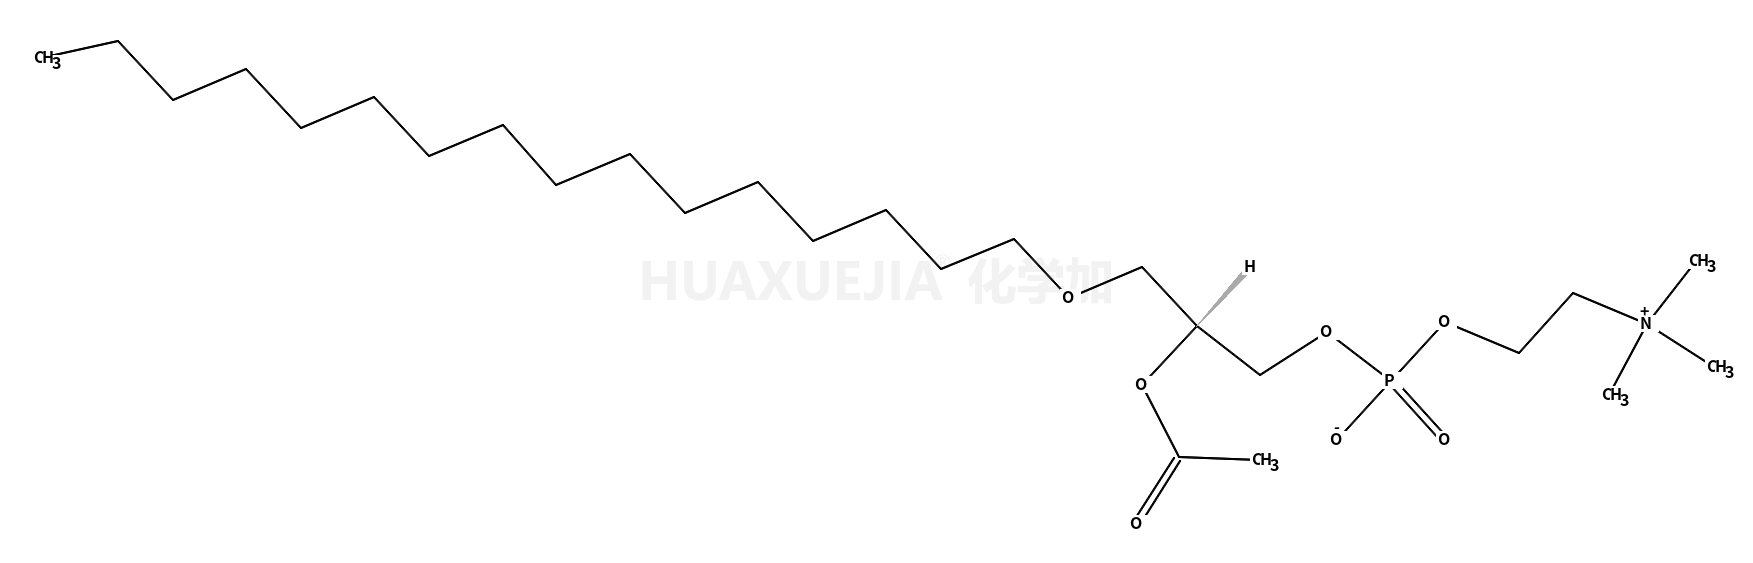 1-O-hexadecyl-2-acetyl-sn-glycero-3-phosphocholine